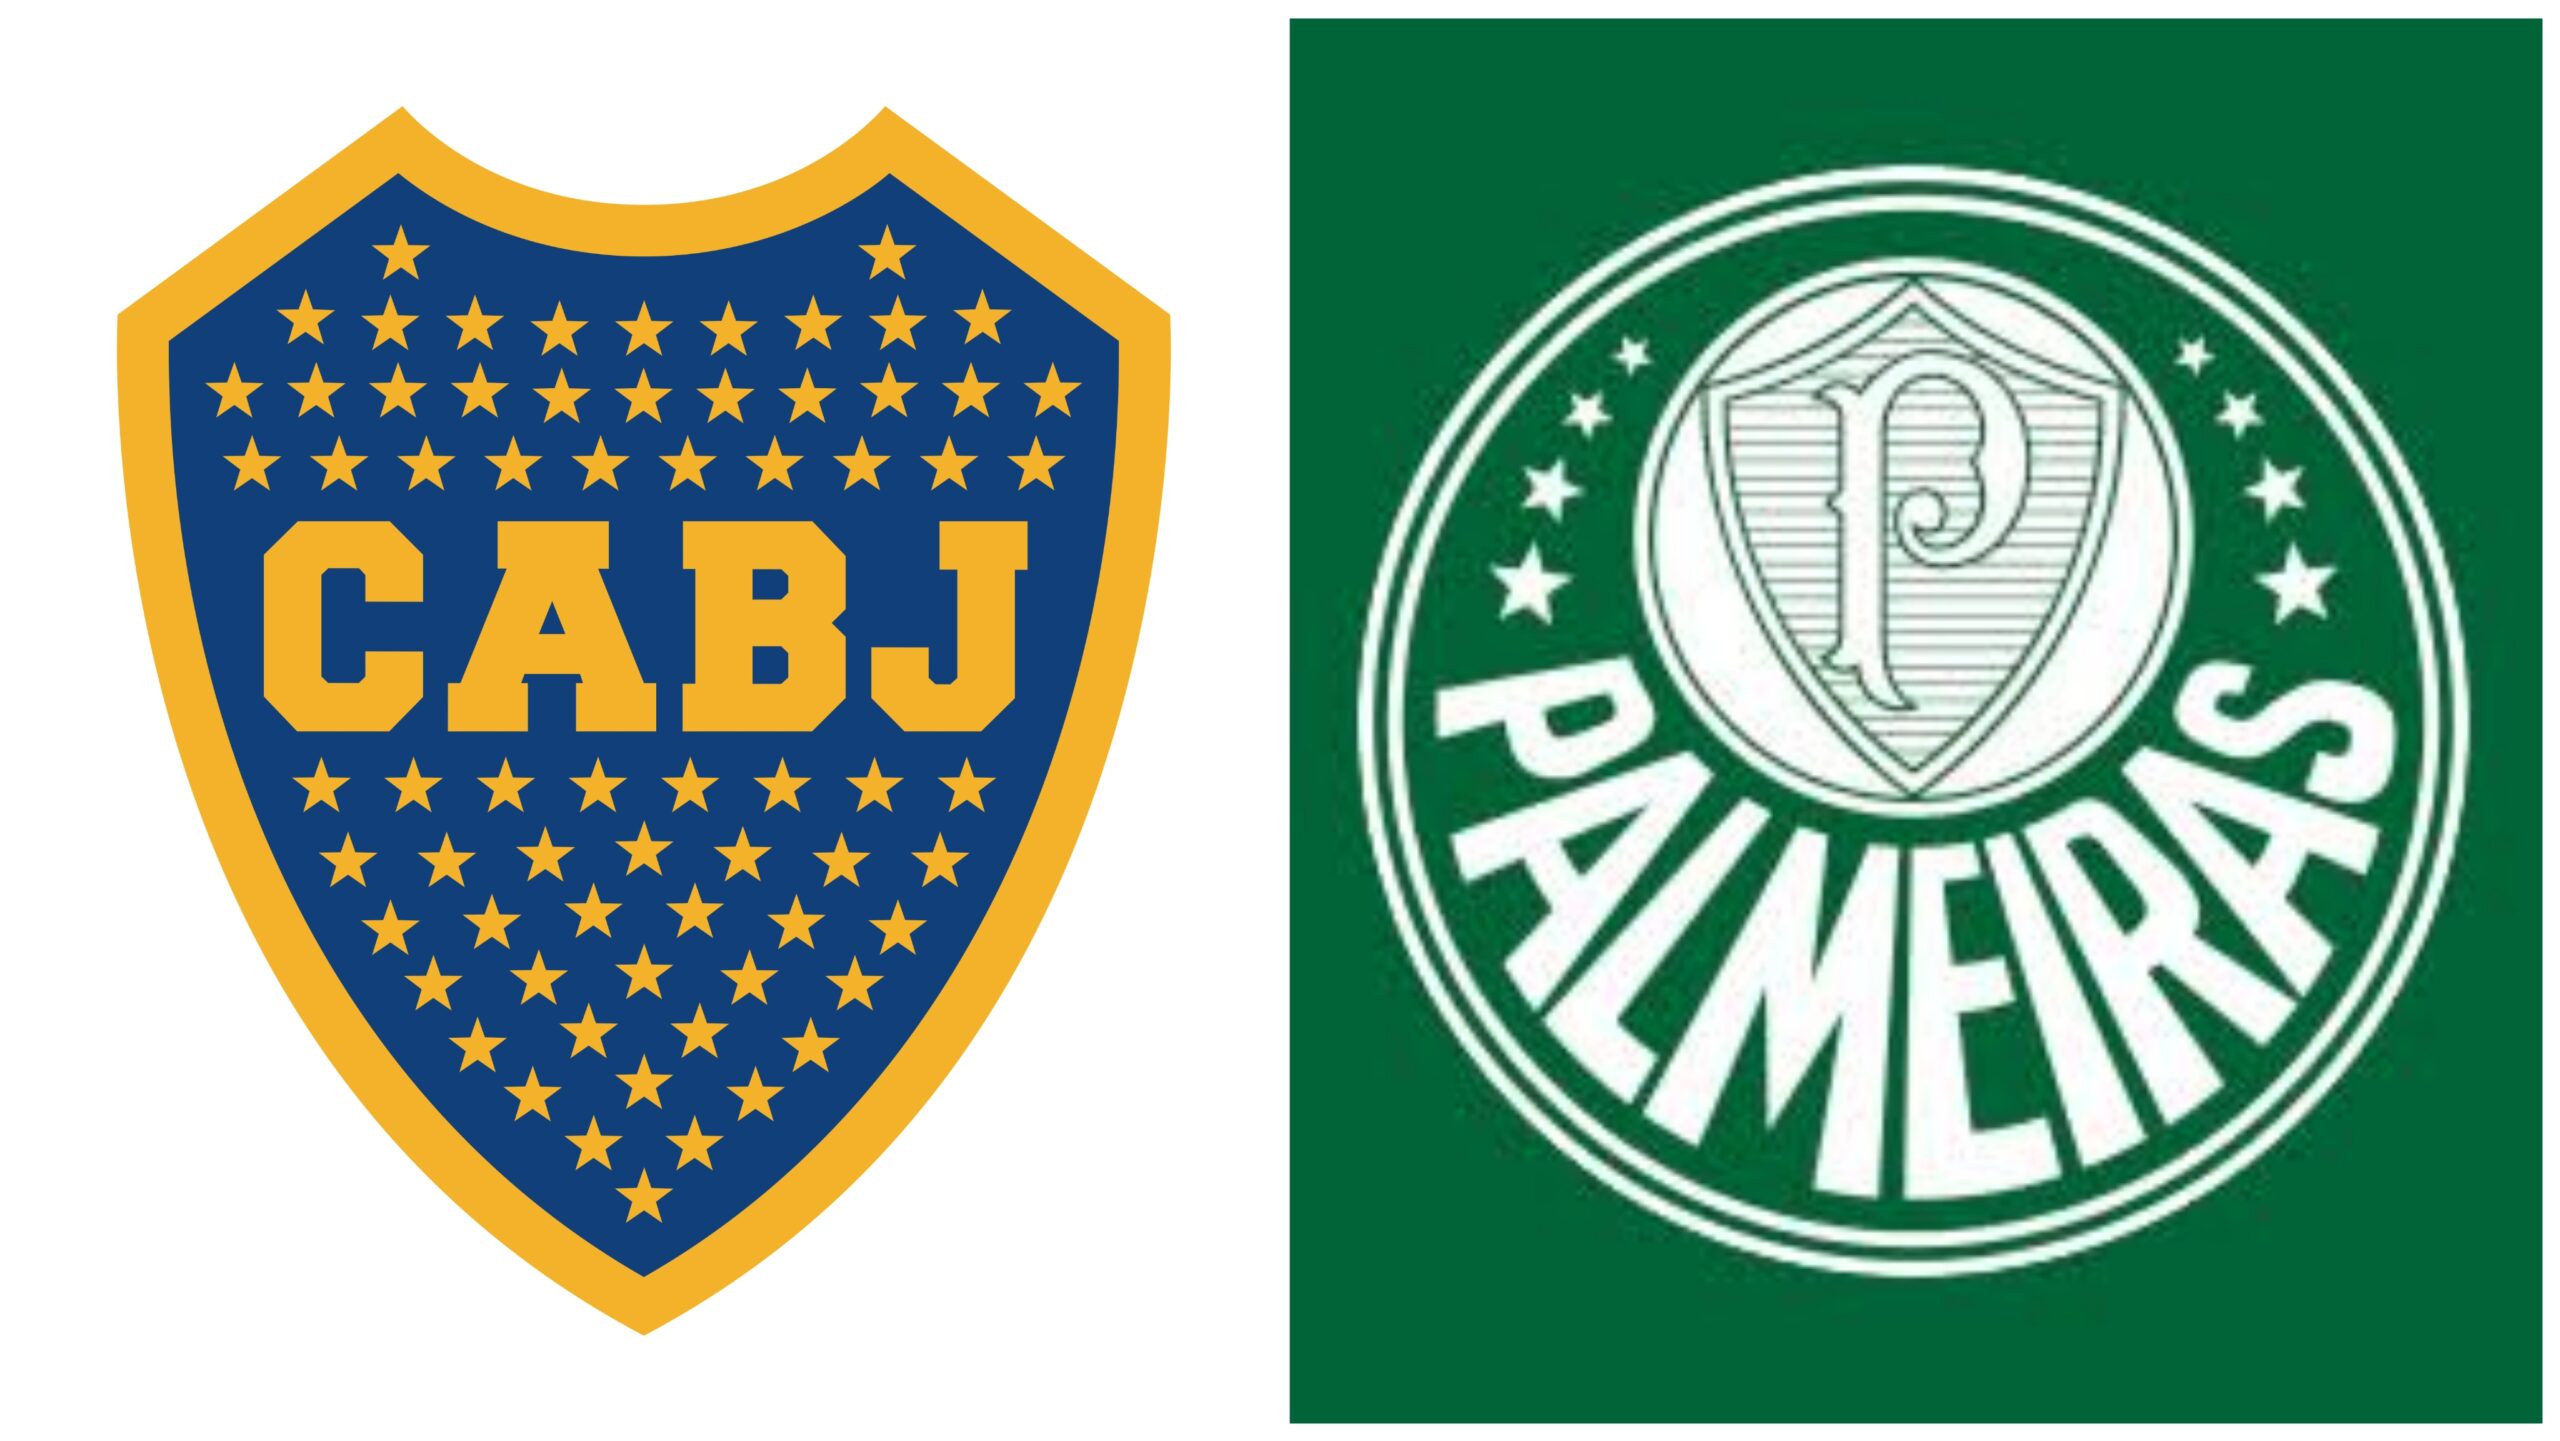 Onde assistir: Palmeiras x Boca Juniors ao vivo e online vai